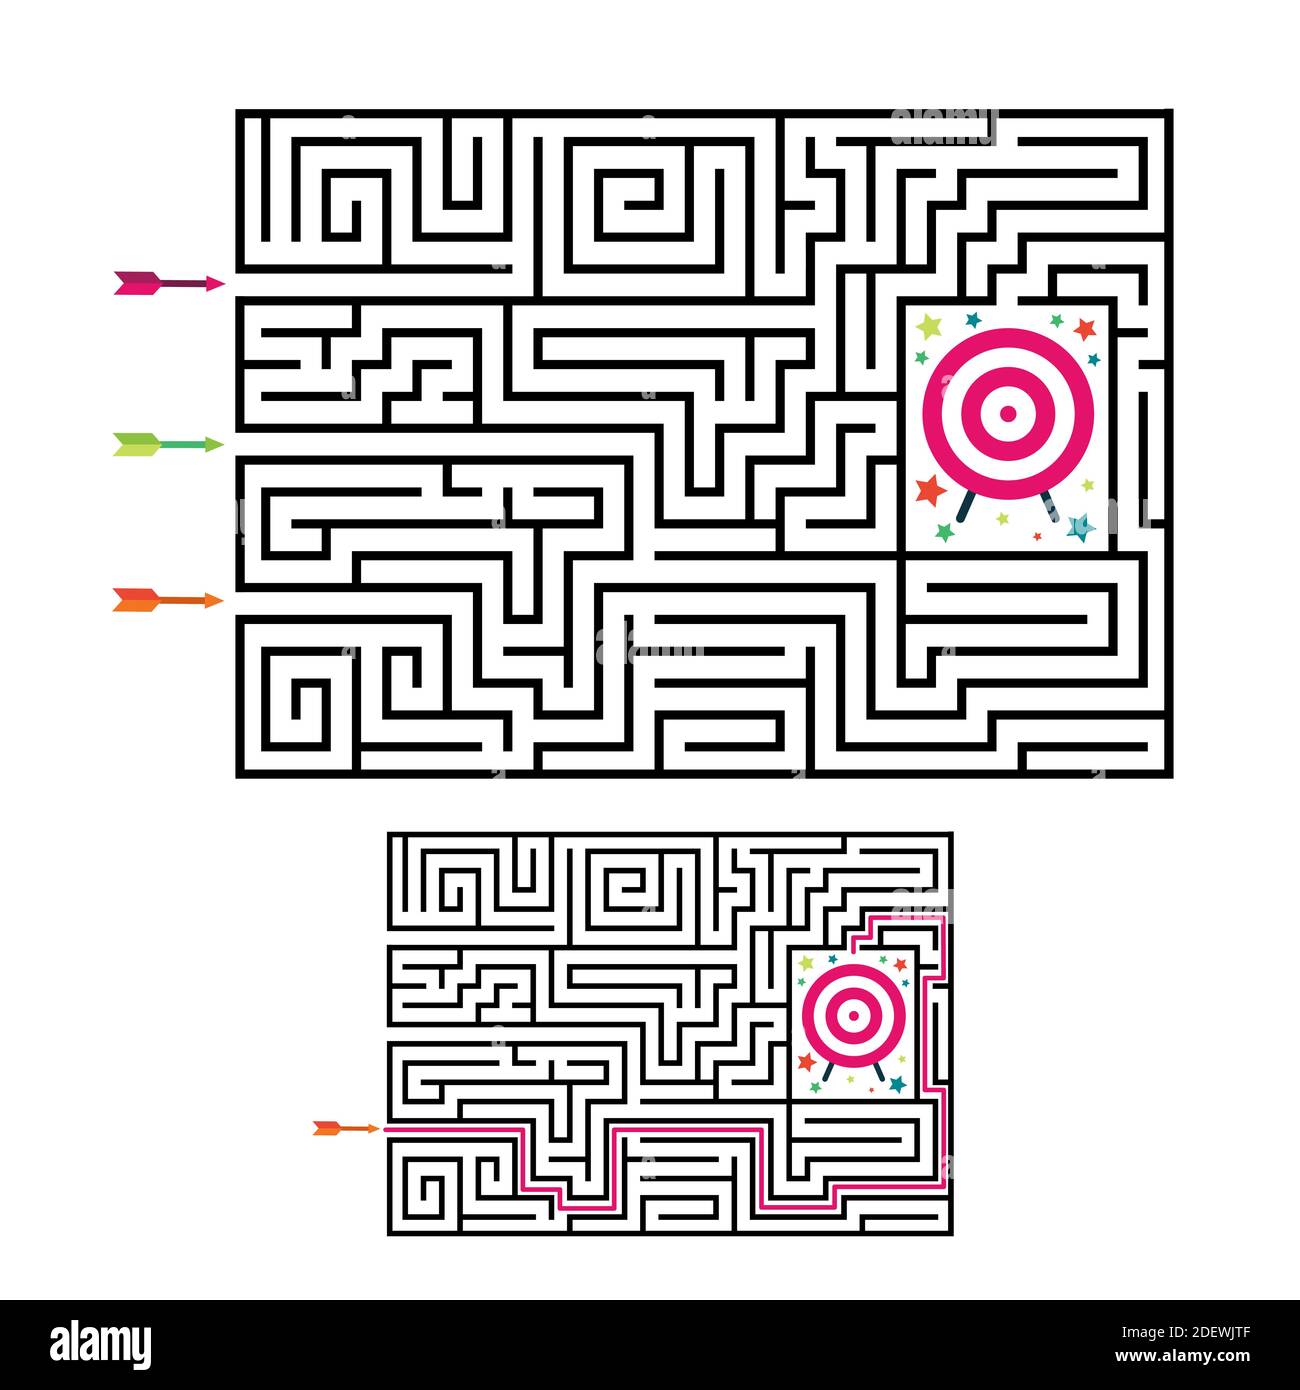 Labirinto quadrato gioco labirinto per bambini. Logica labirintica con target e frecce. 3 ingresso e una strada a destra per andare. Immagine piatta vettoriale Illustrazione Vettoriale